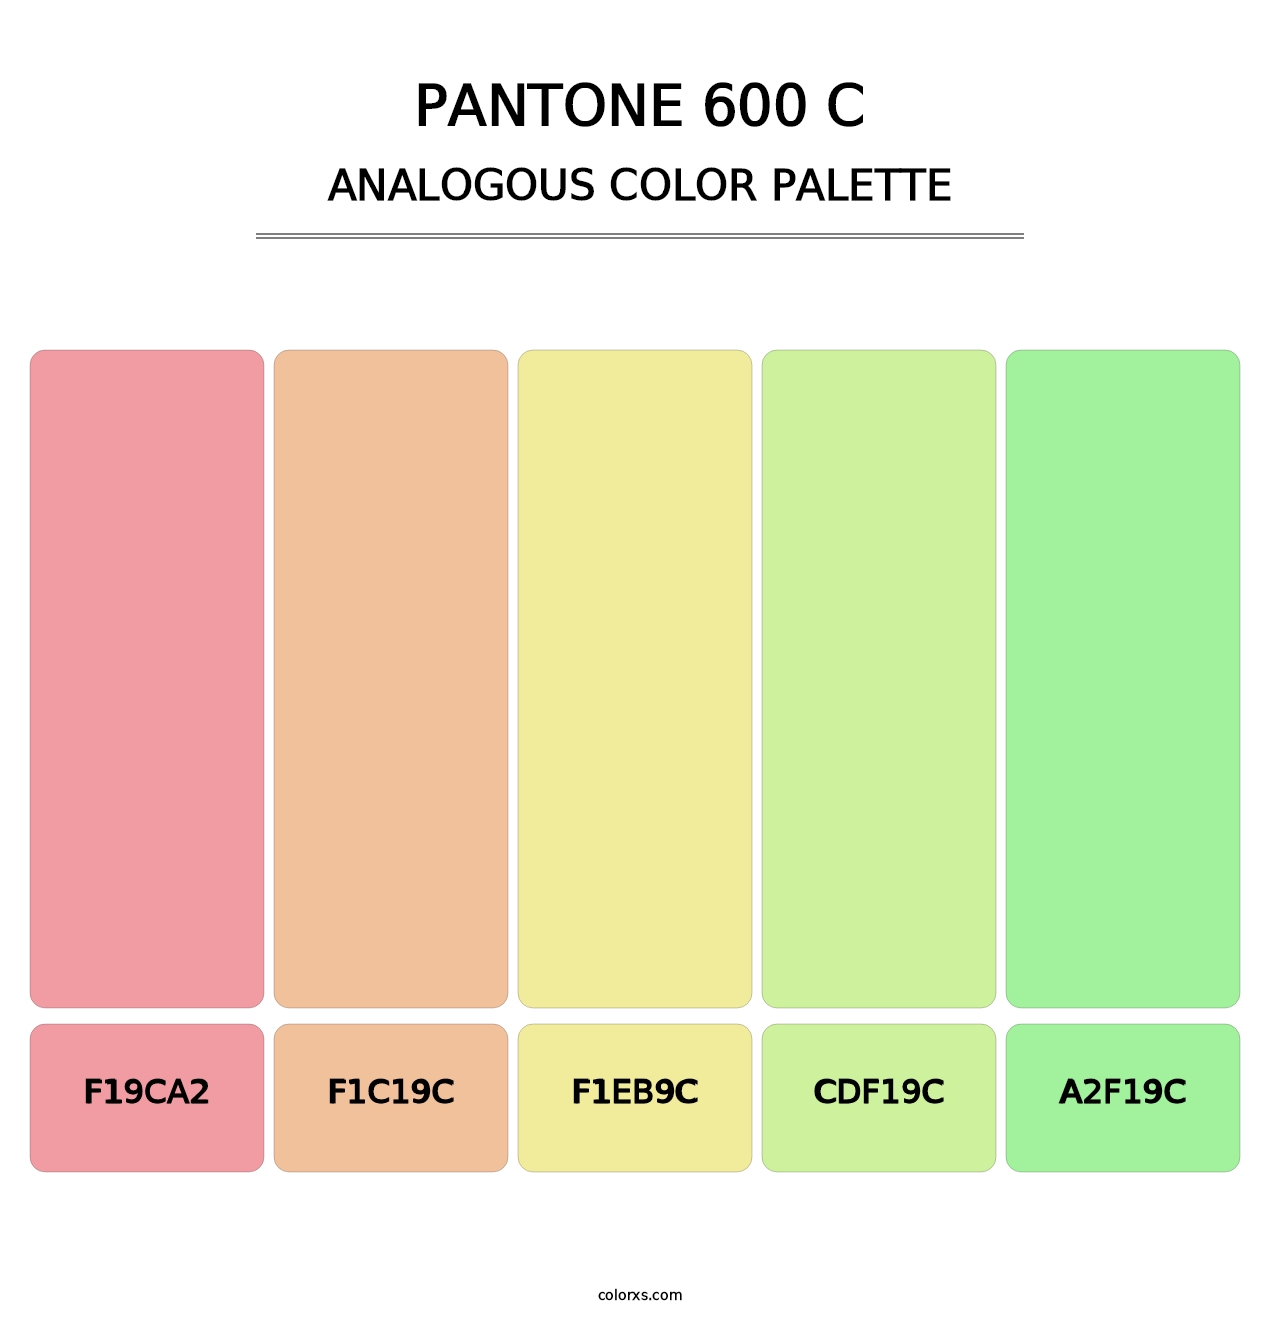 PANTONE 600 C - Analogous Color Palette